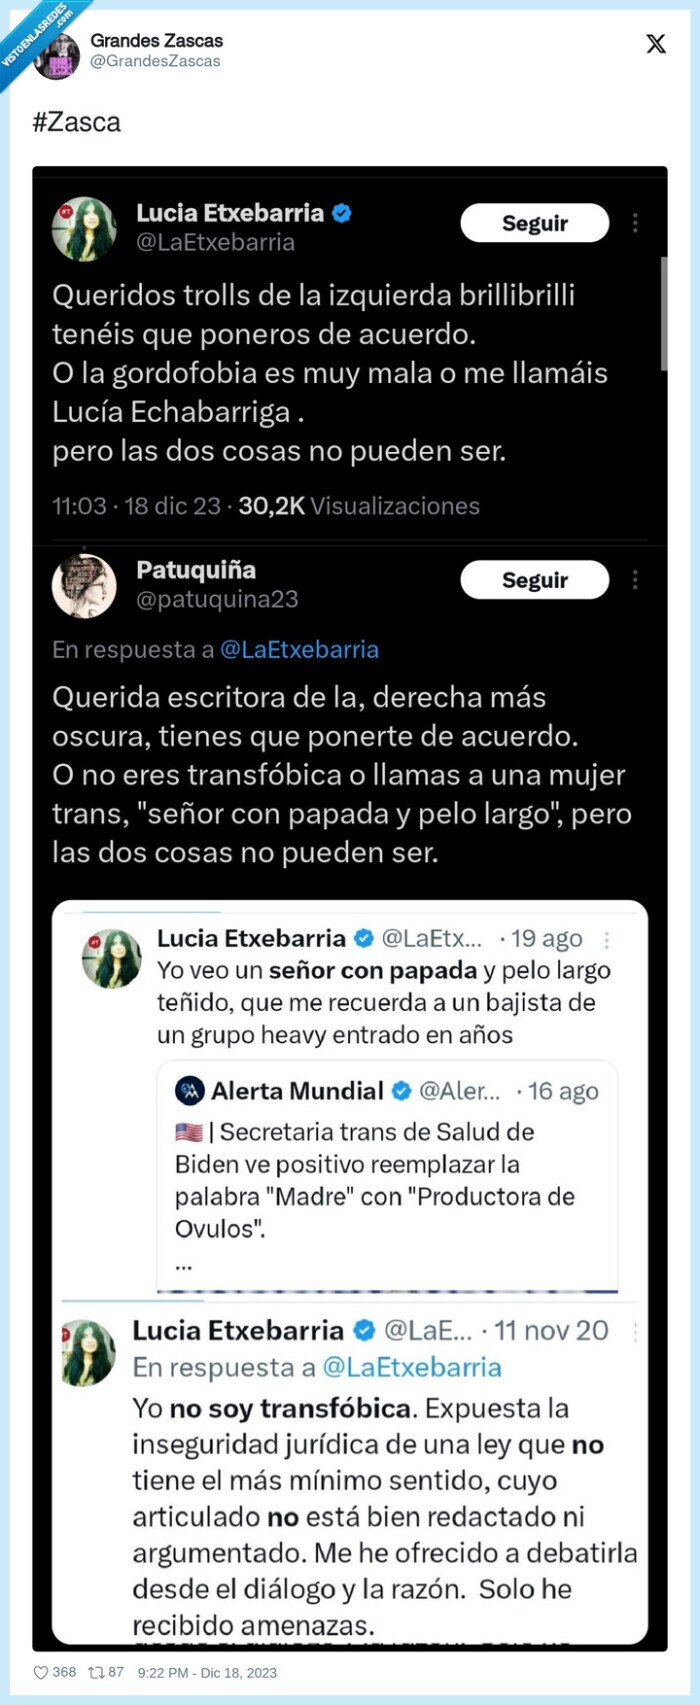 1497545 - Lucía Etxebarría es experta en comerse autozascas